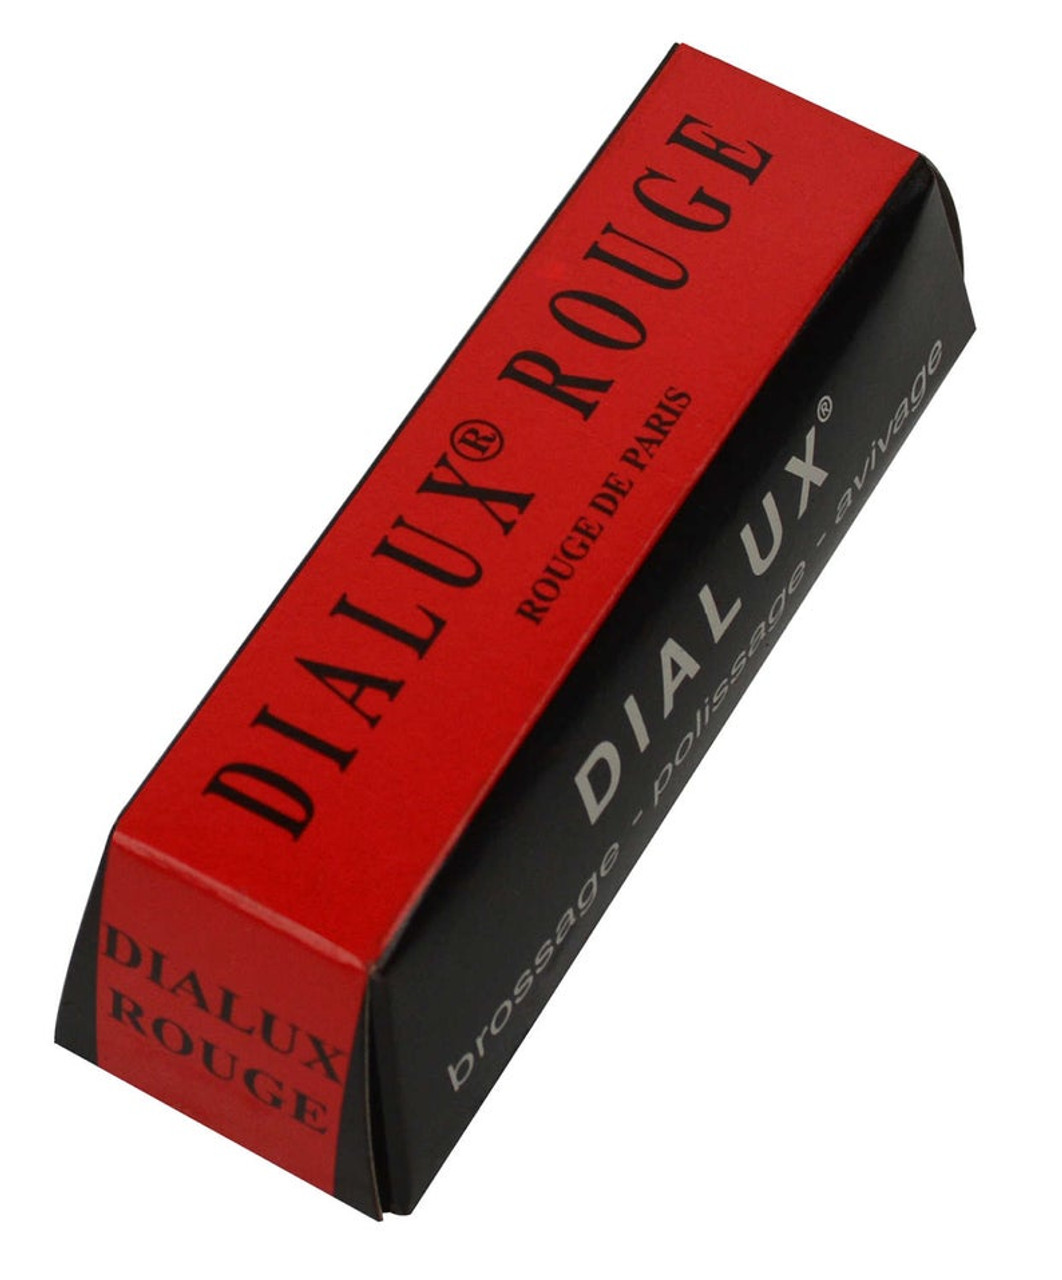 Dialux Premium Polishing Compounds